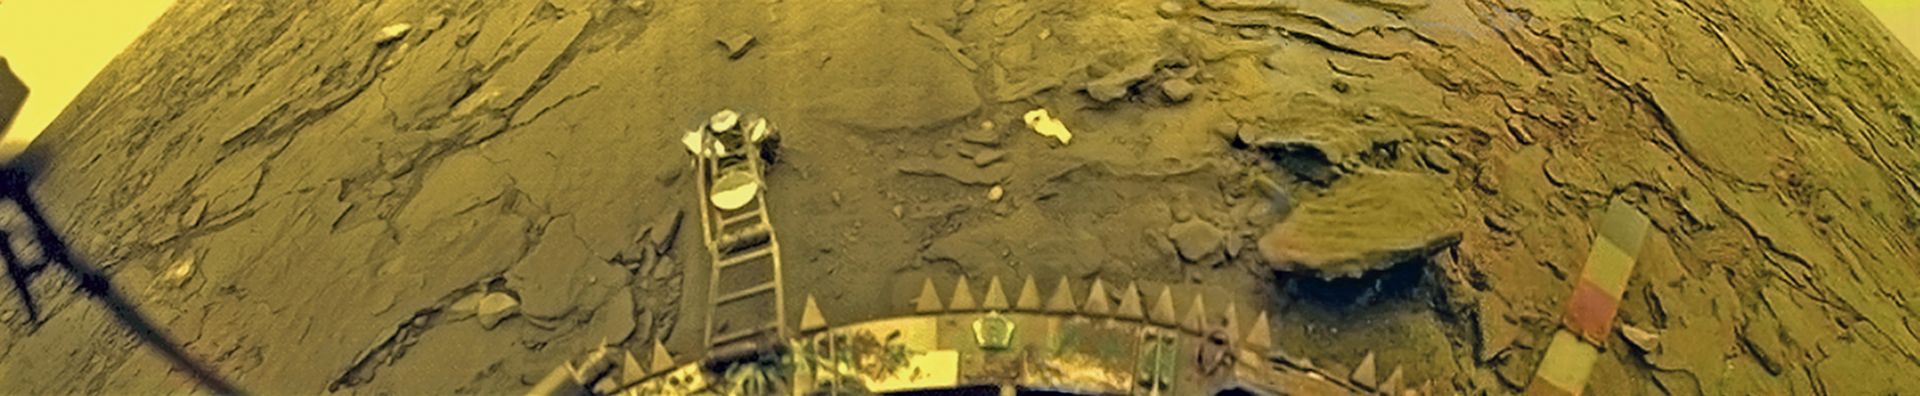 Снимка от "Венера 14"